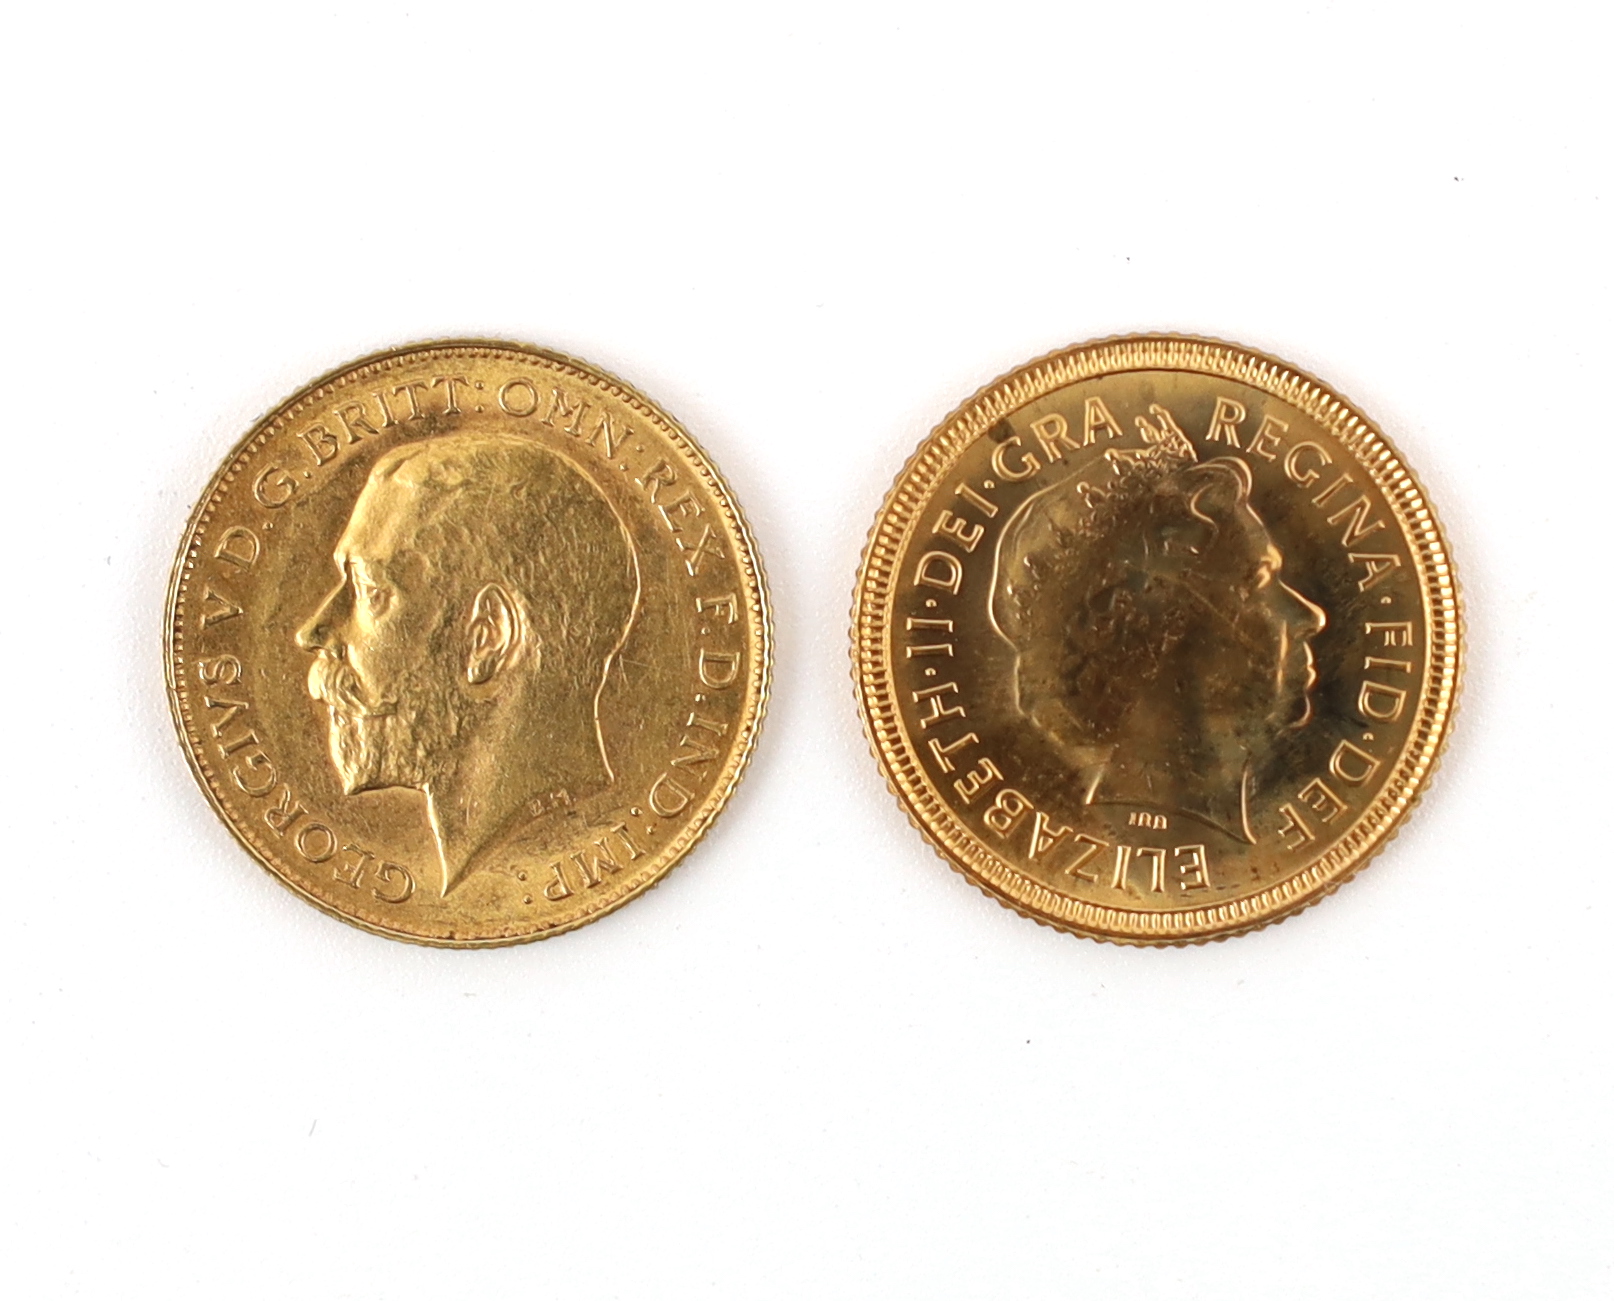 British Gold coins, George V half sovereign, 1913, EF (S4006) and Elizabeth II half sovereign, 2002, rev. Shield (S4441) (2)